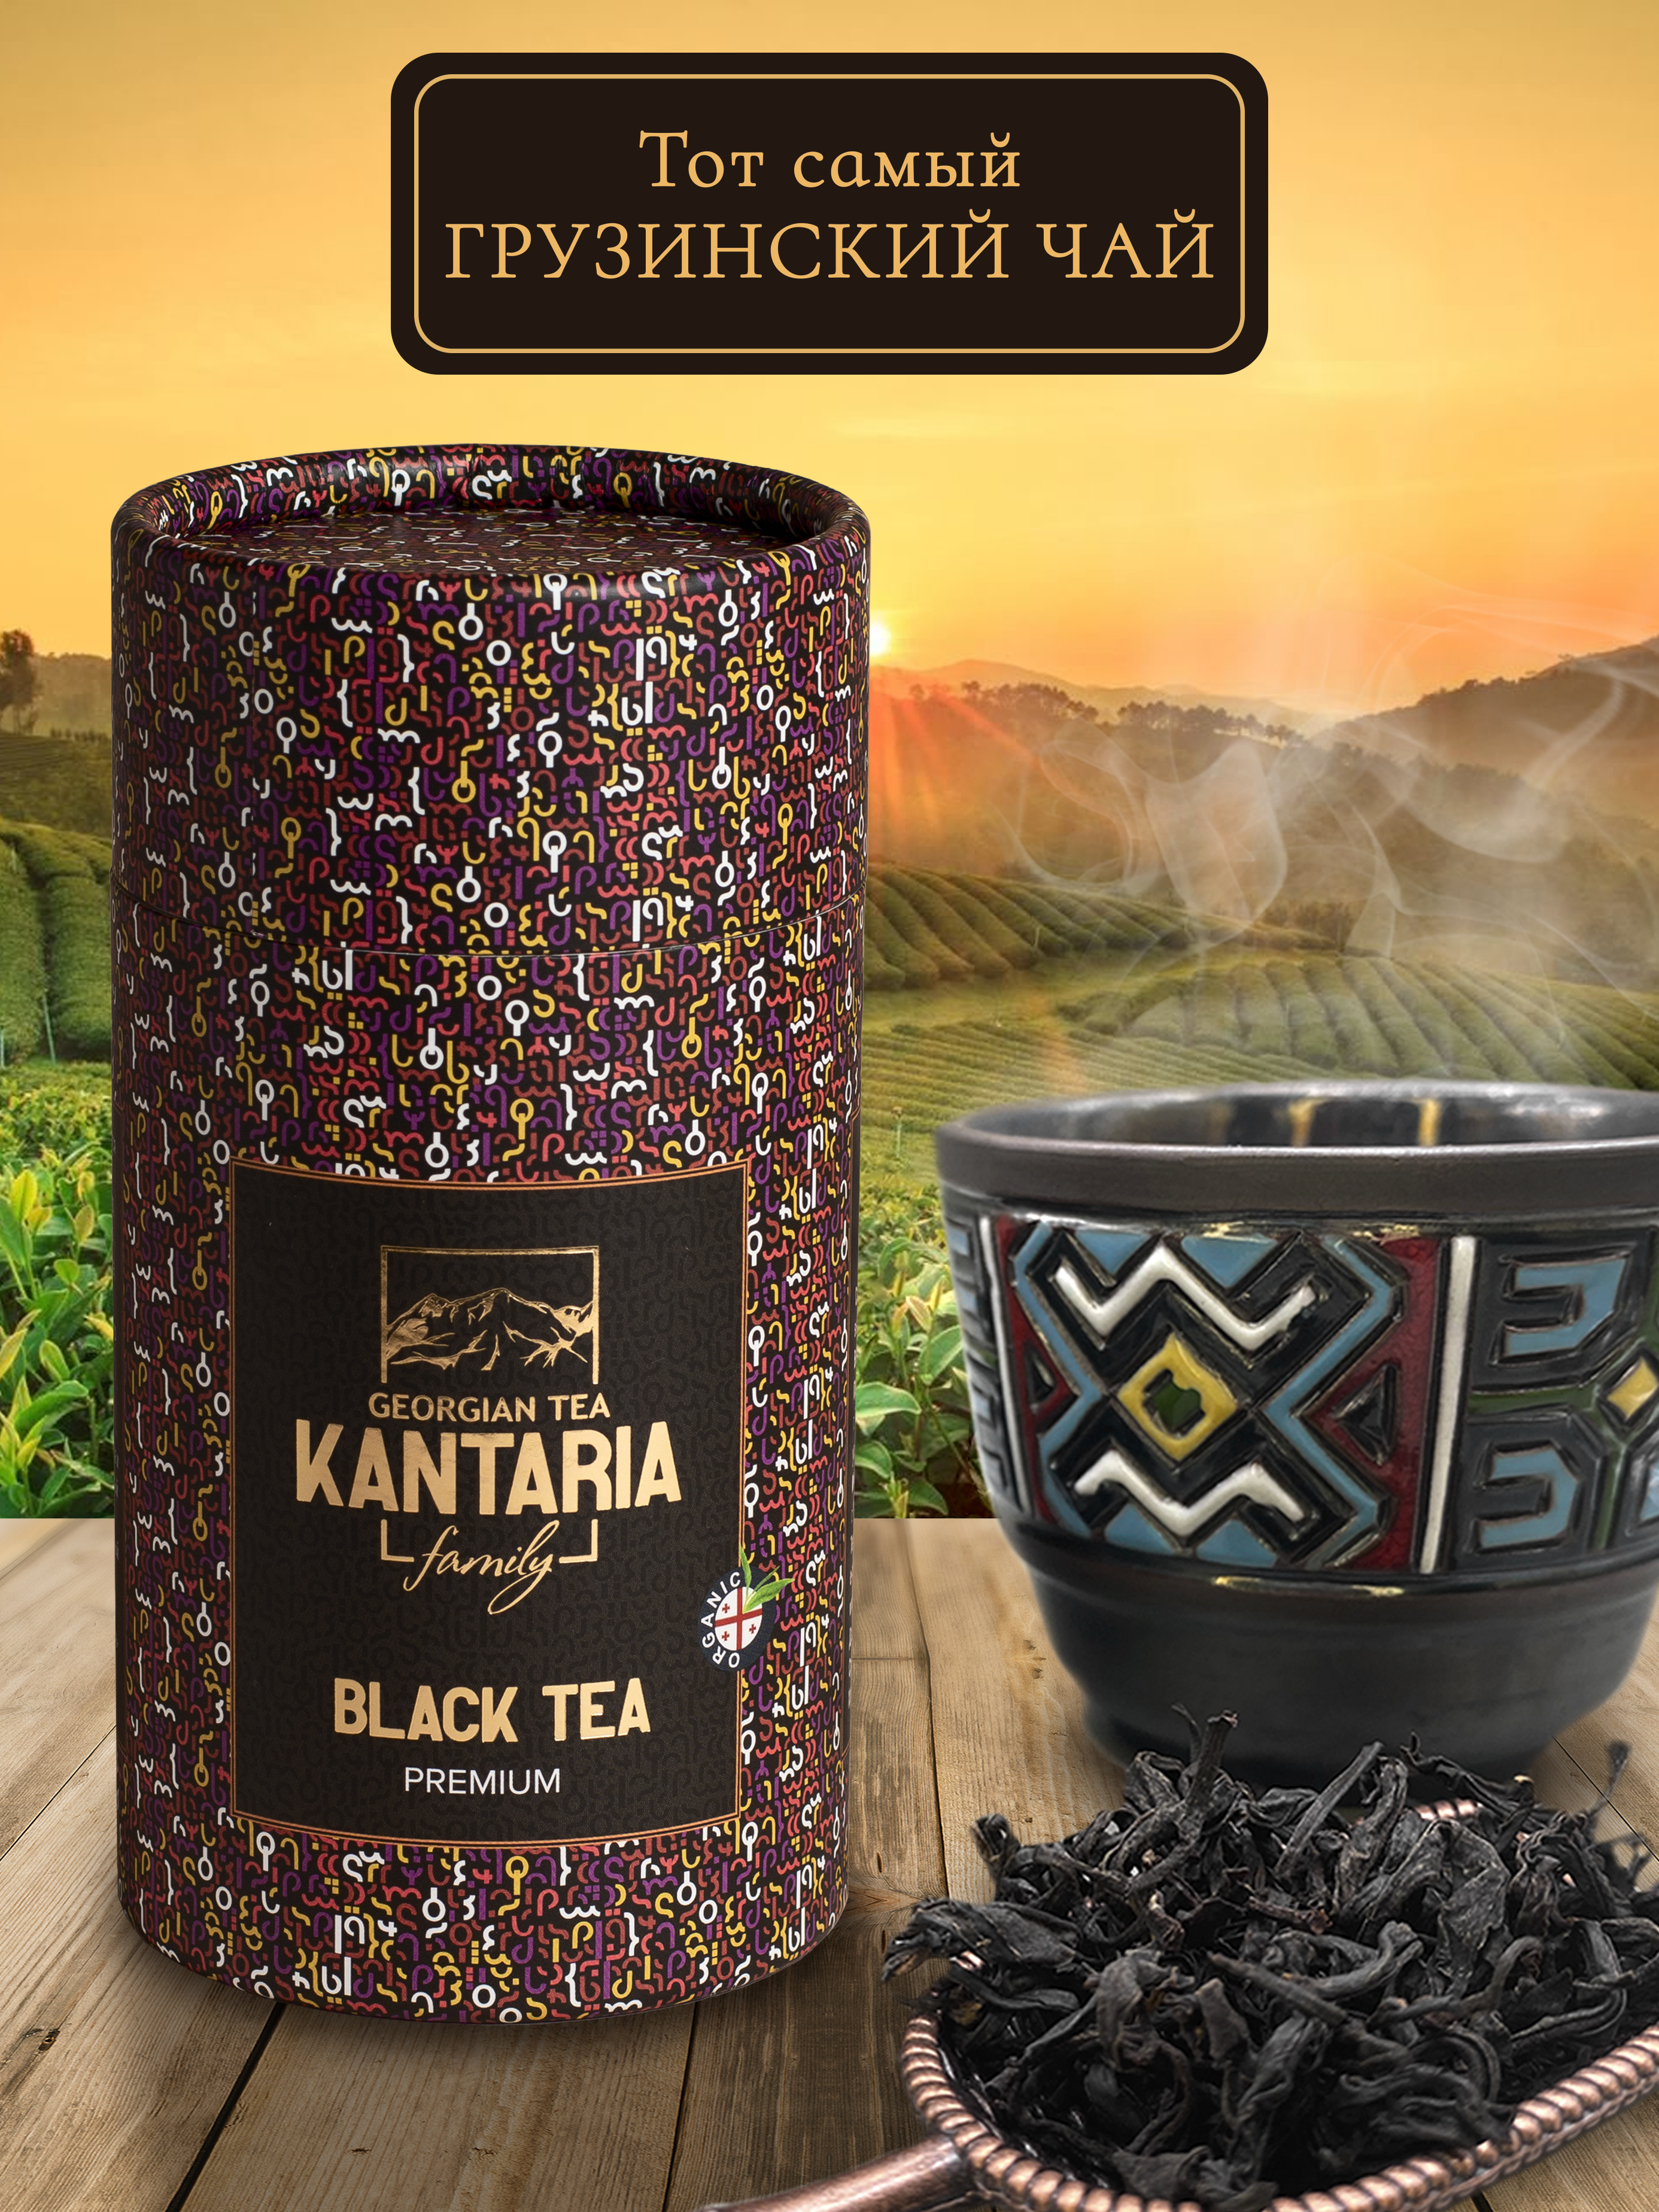 Черный крупнолистовой чай KANTARIA премиум в тубе - фото 2